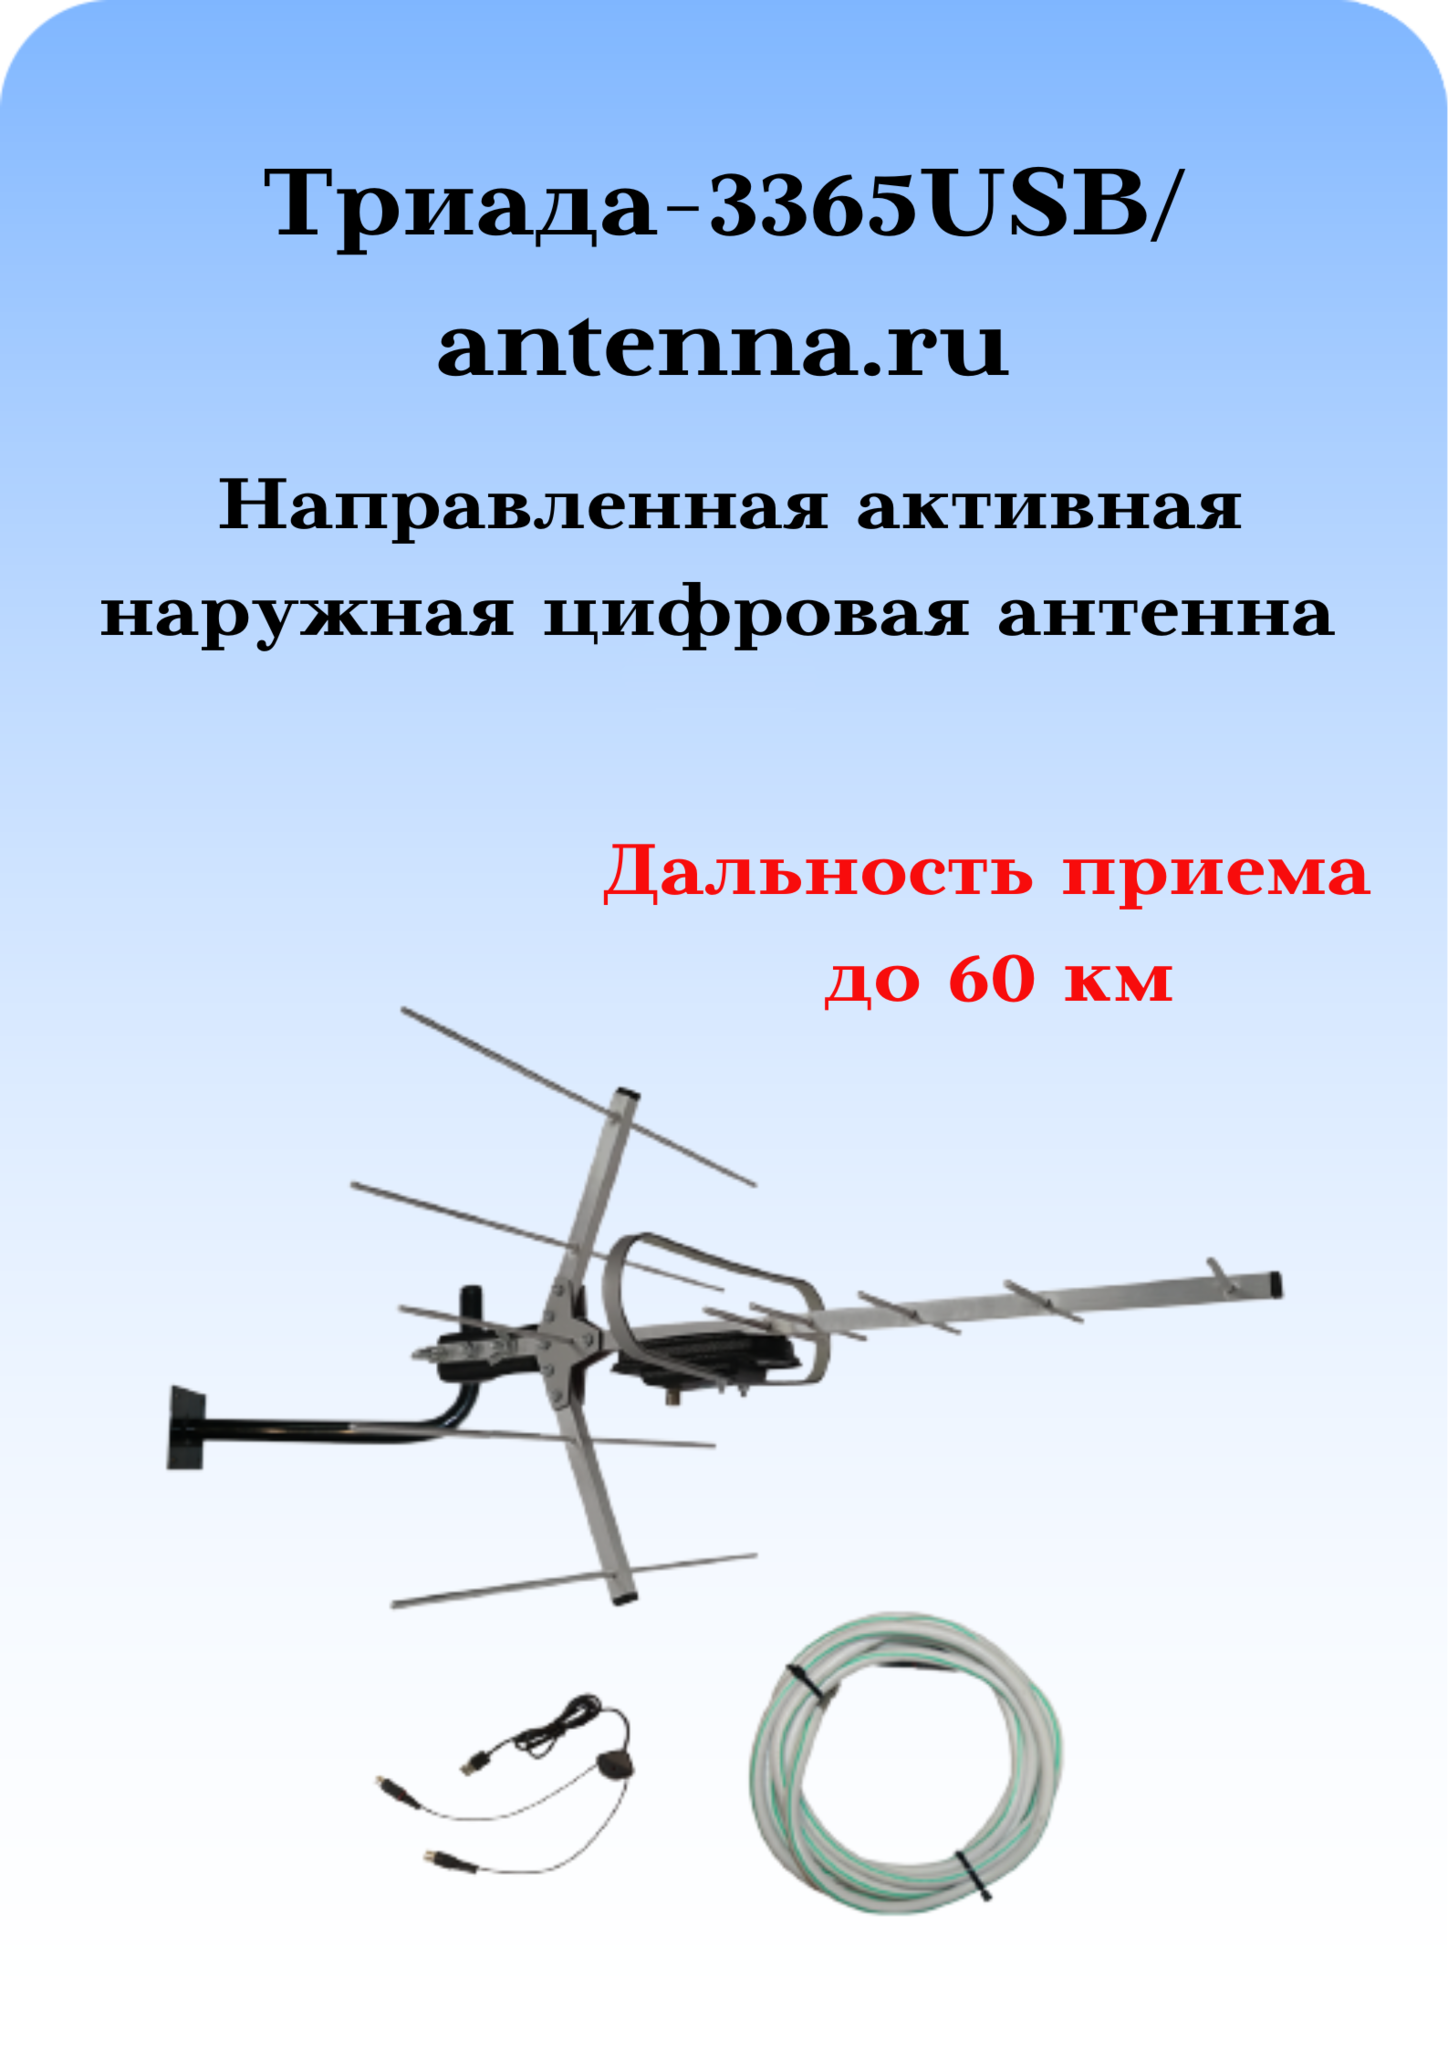 Комплект ТРИАДА-3365USB/antenna.ru: мощная наружная цифровая ТВ-антенна Триада-3360 в комплекте с инжектором питания, кабелем и кронштейном